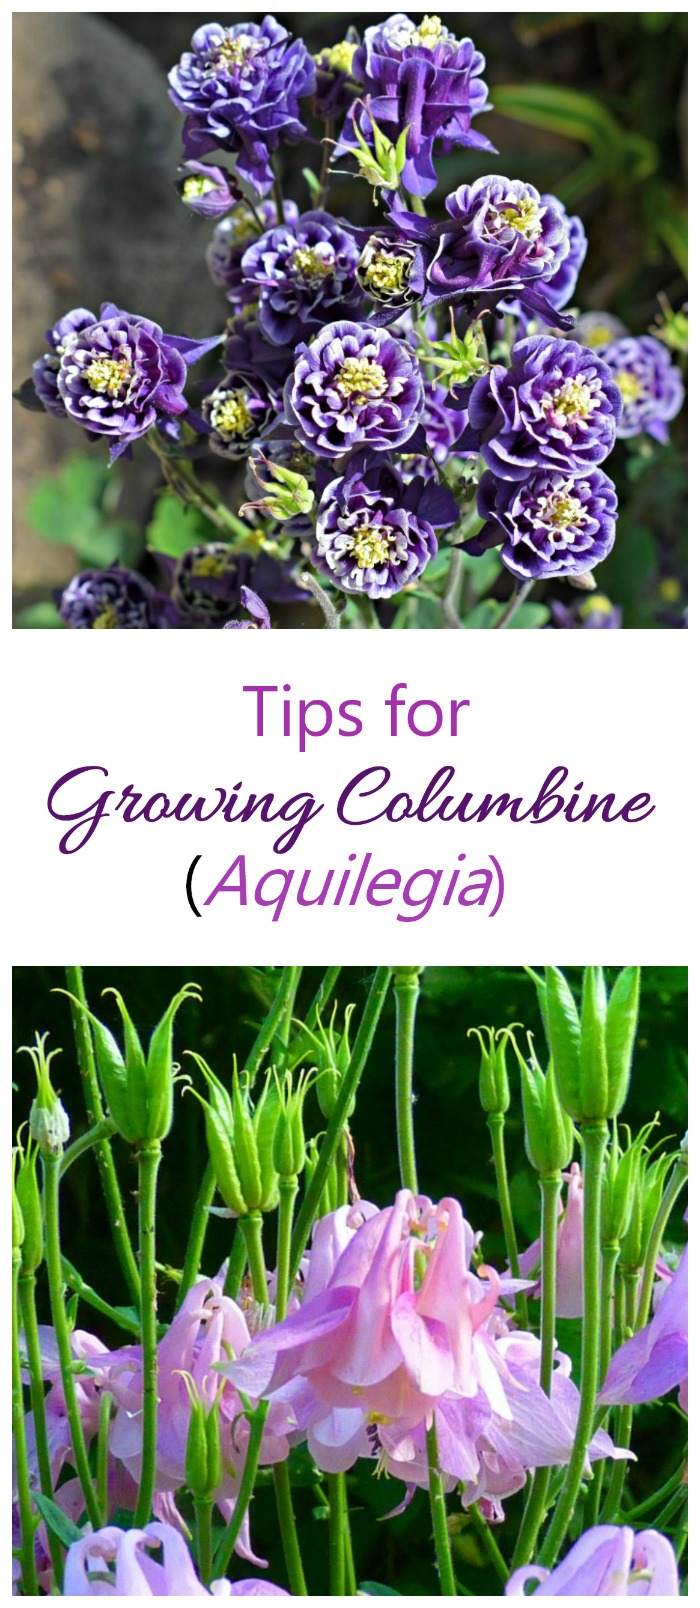 Выращивание колумбий - Как вырастить аквилегию для получения уникальных колокольчатых цветков